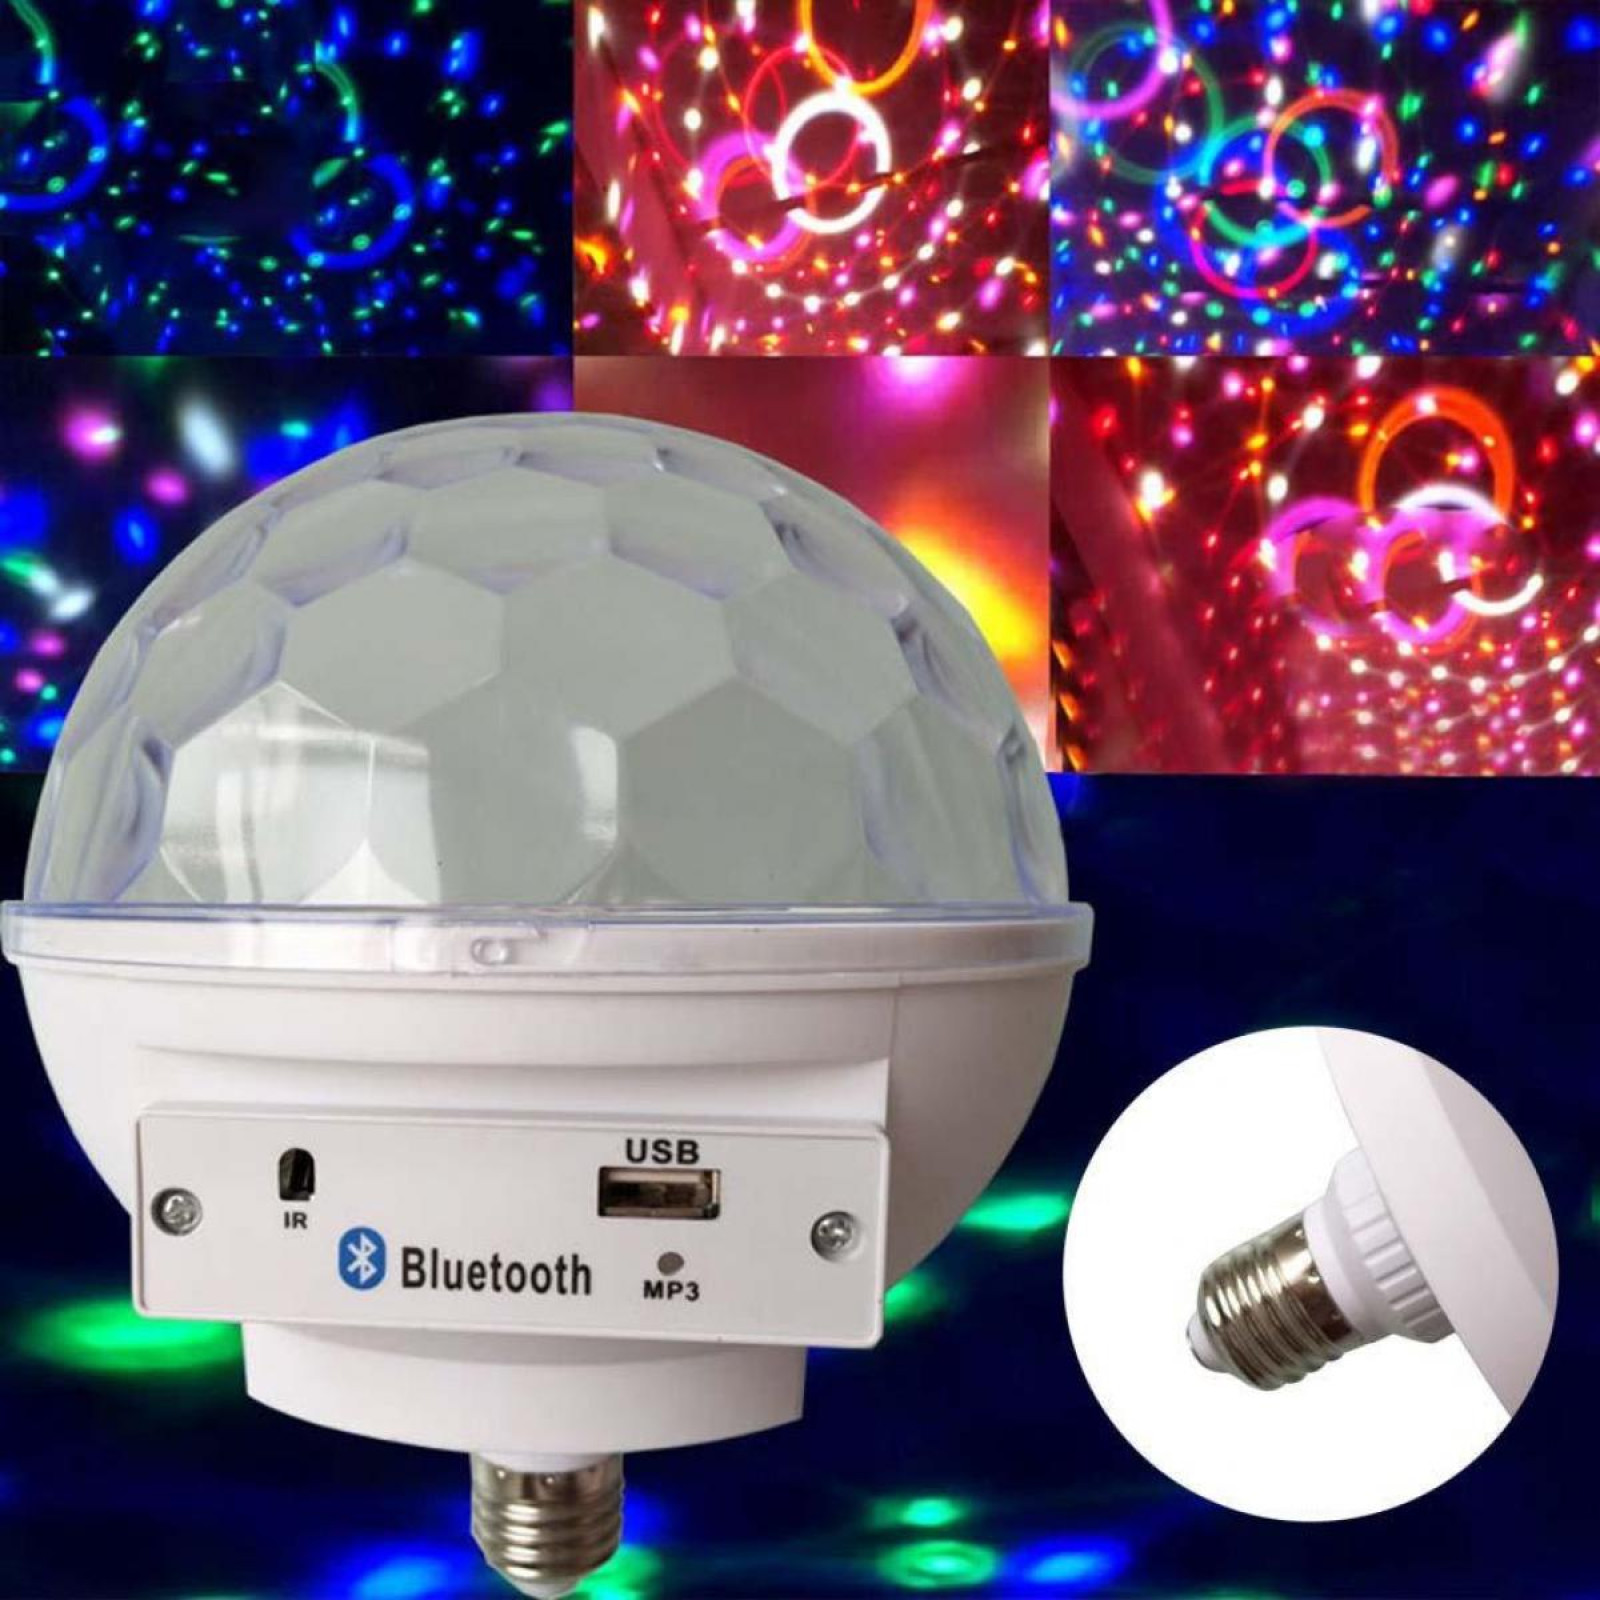 Диско шар в патрон GBX LED Crystal magic ball light E27 997 BT Bluetooth 179794